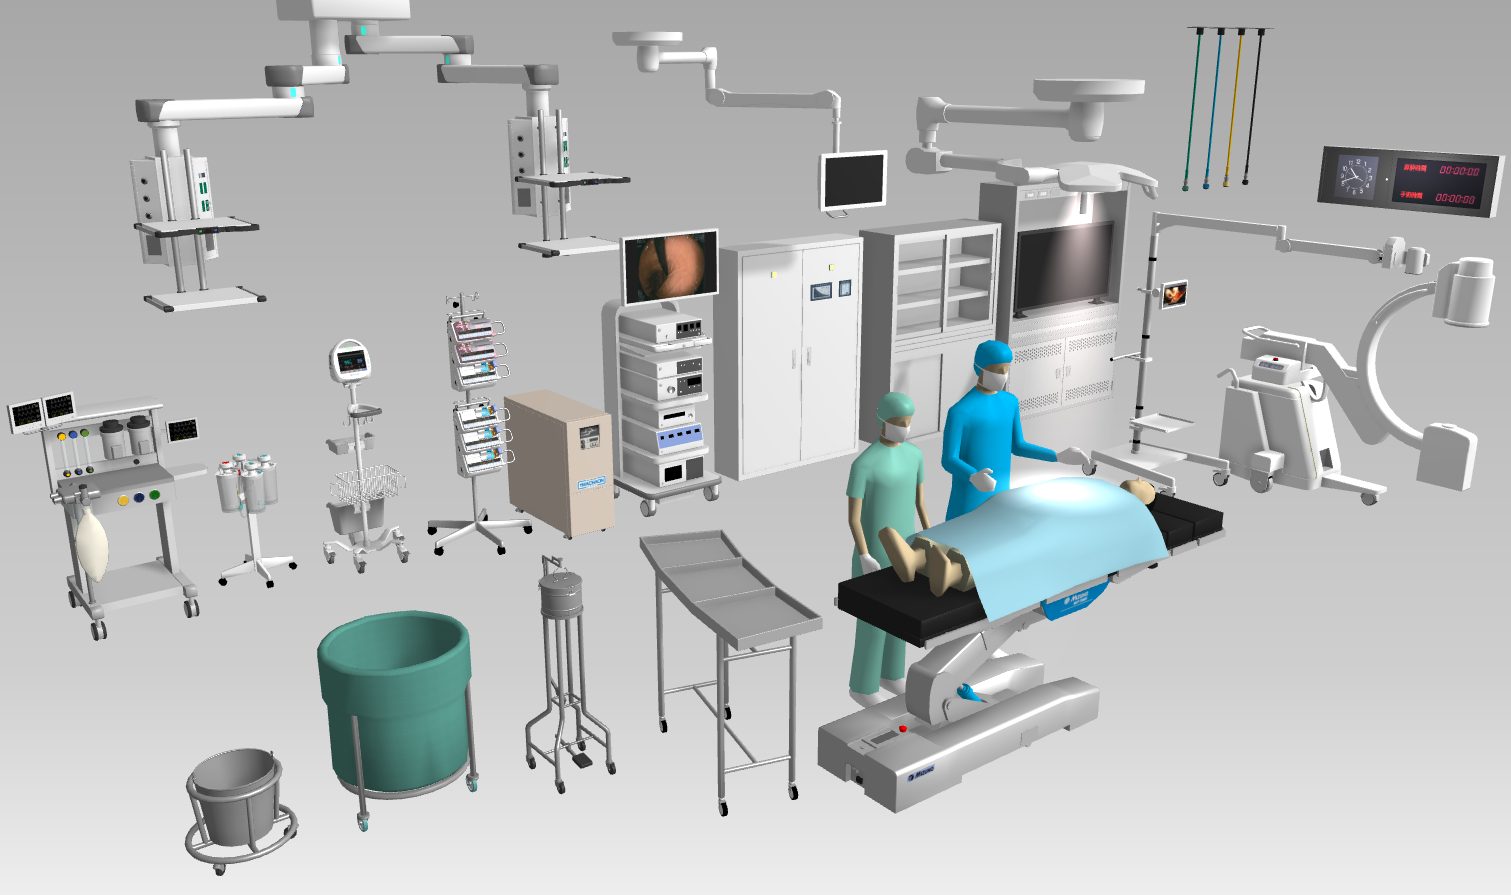 メガソフトが出品する3D医療施設デザイナーには医療機器メーカーの製品など医療・福祉施設用の3Dオブジェクトが多数収録されています。（画像は手術室向け3Dオブジェクトの一部）